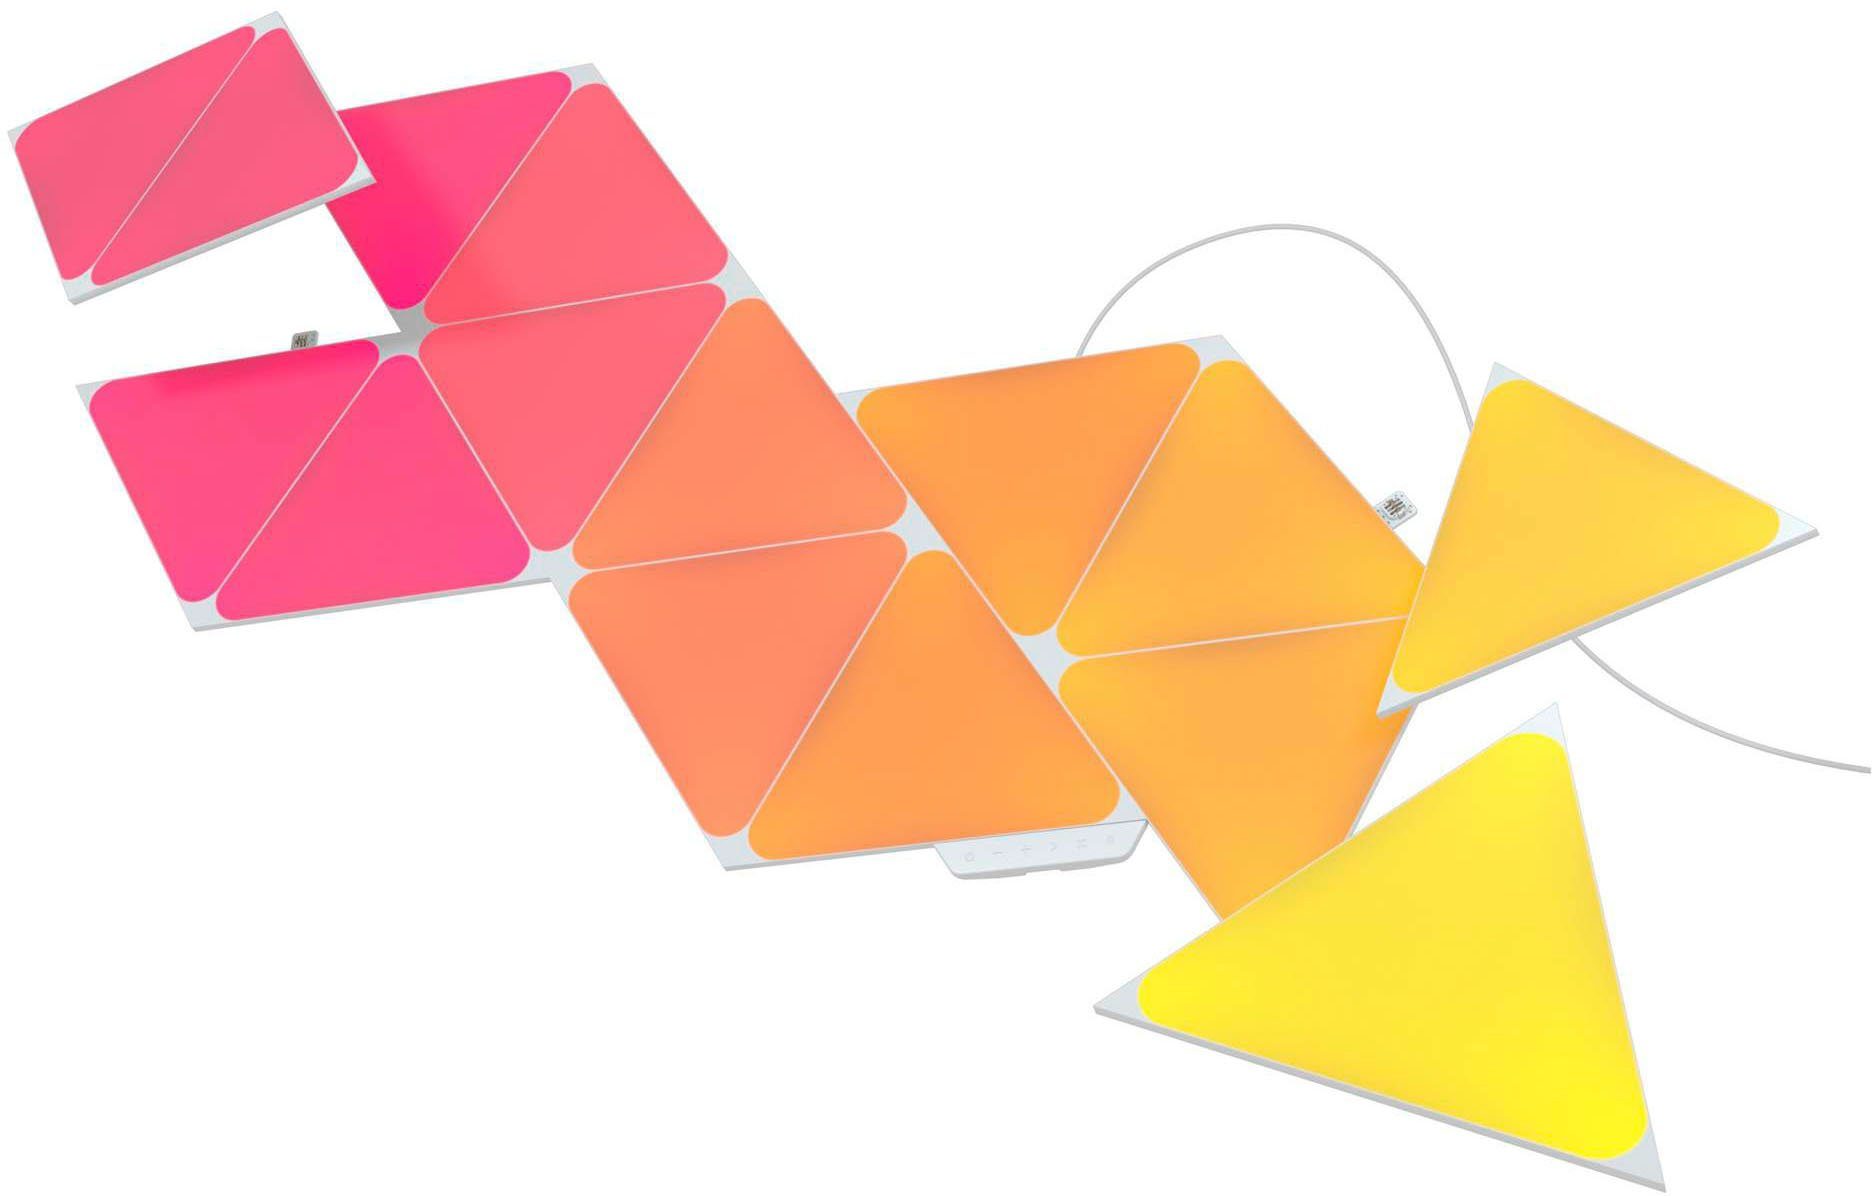 fest Dimmfunktion, Farbwechsler LED Panel integriert, nanoleaf Triangles, LED